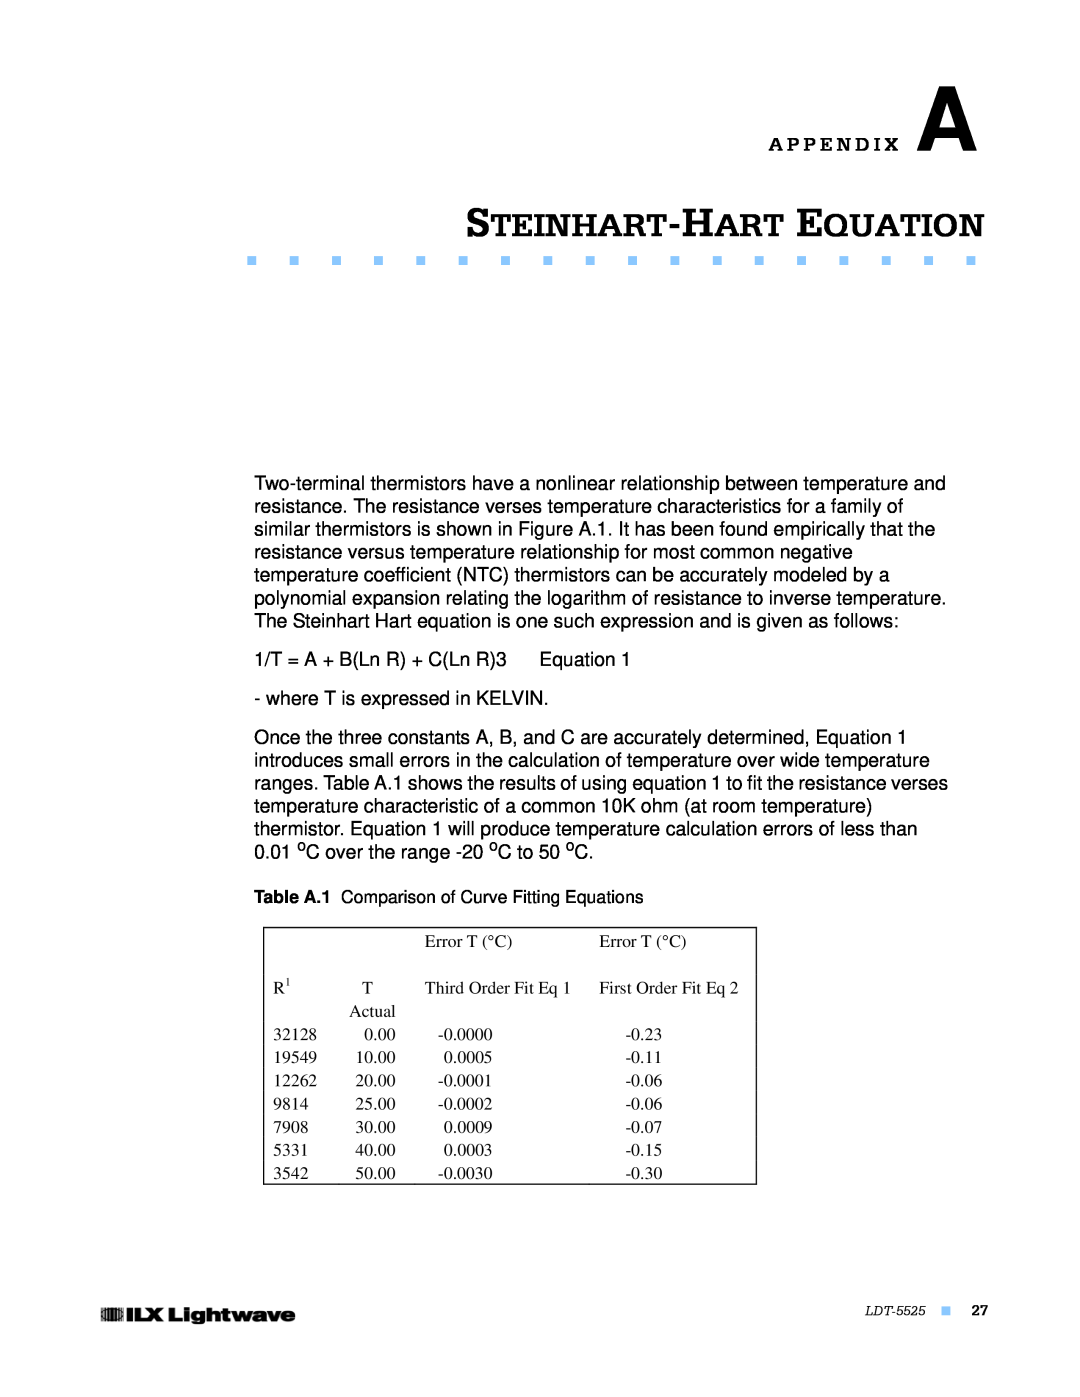 Lightwave Communications LDT-5525 manual Steinhart-Hart Equation, A P P E N D I X A 